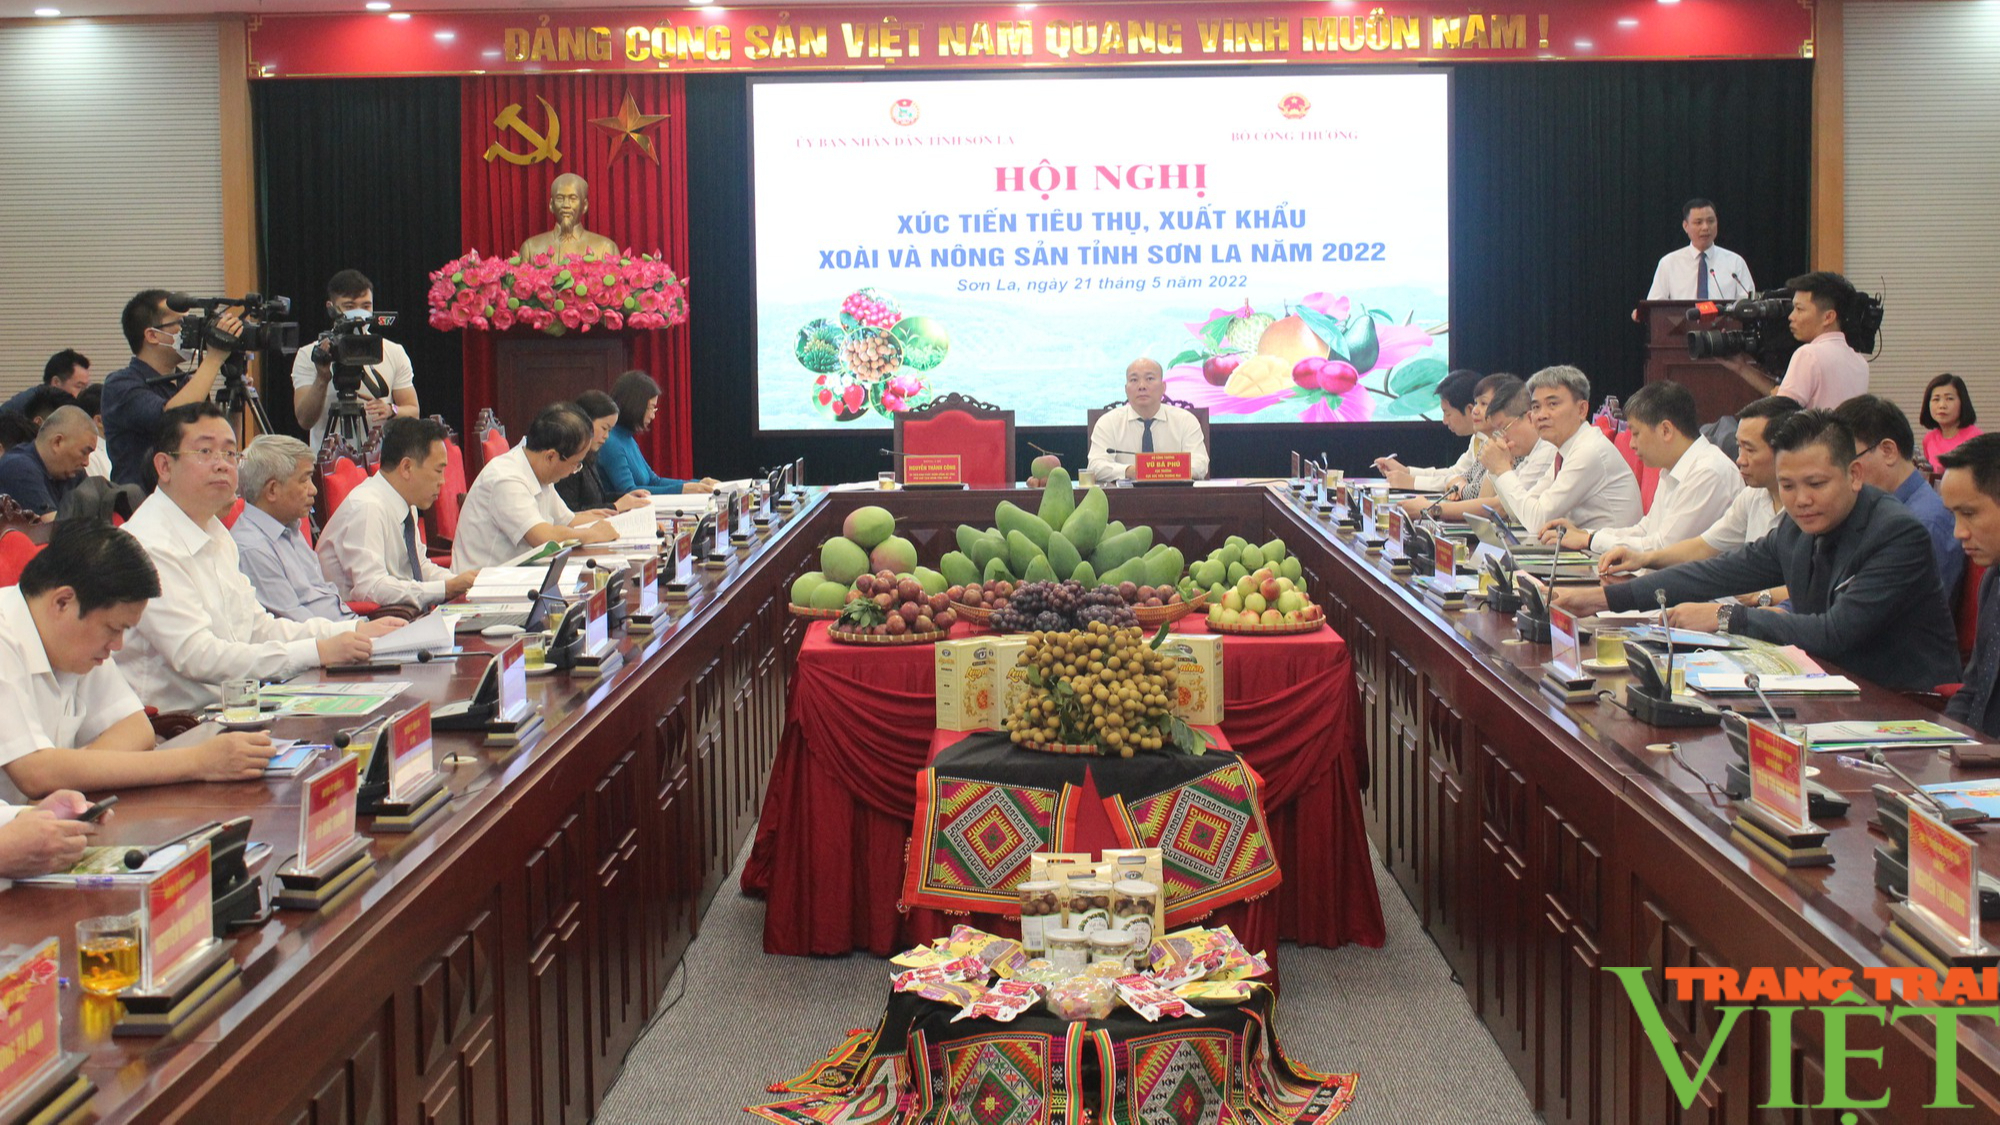 Sơn La: Tạo cơ hội cho các doanh nghiệp nước ngoài ký kết hợp đồng tiêu thụ xoài và nông sản - Ảnh 2.